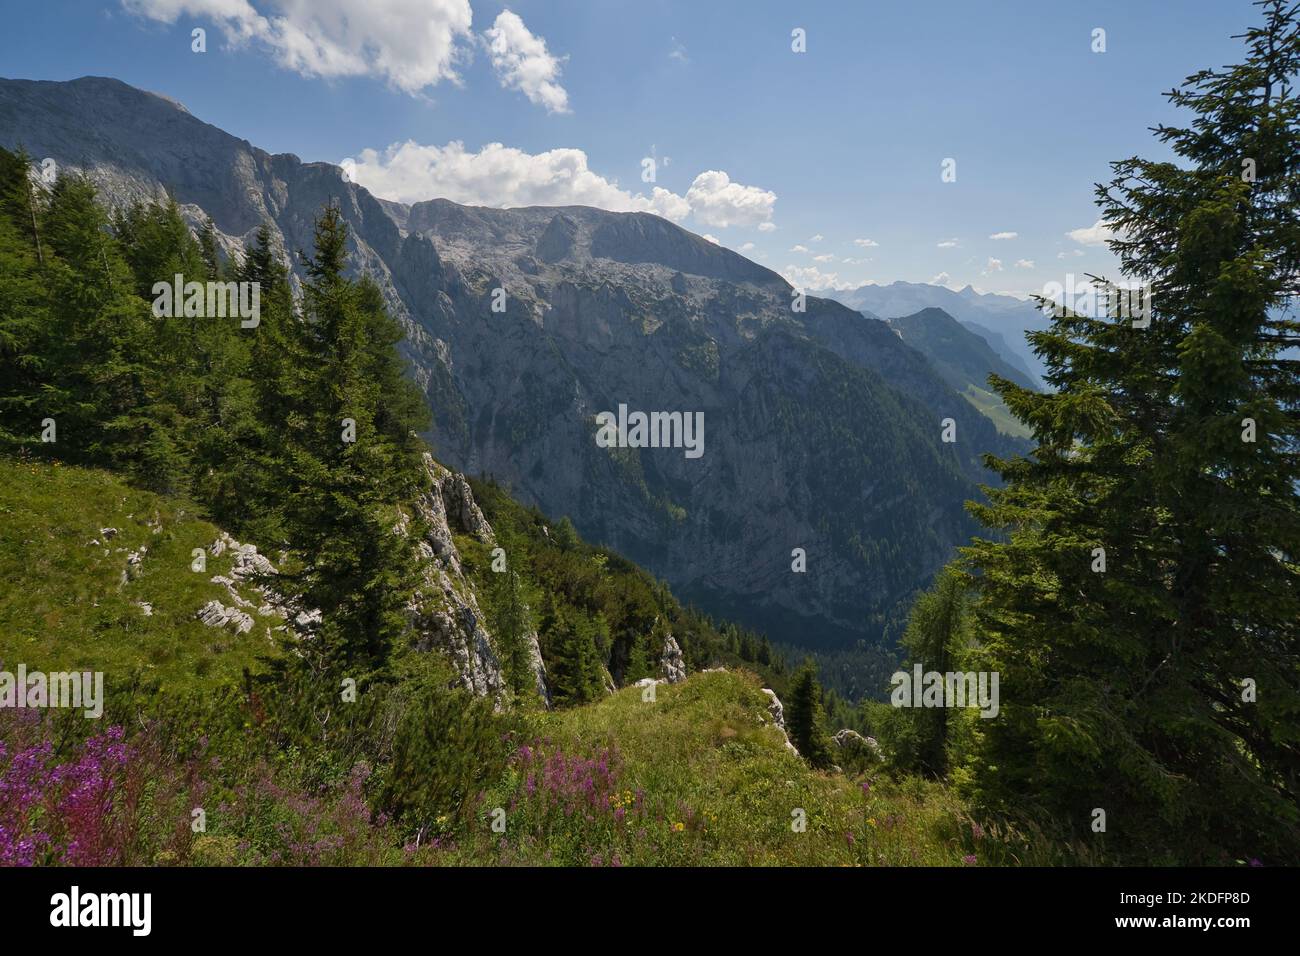 El hermoso mundo de montaña en la frontera germano-austríaca Foto de stock